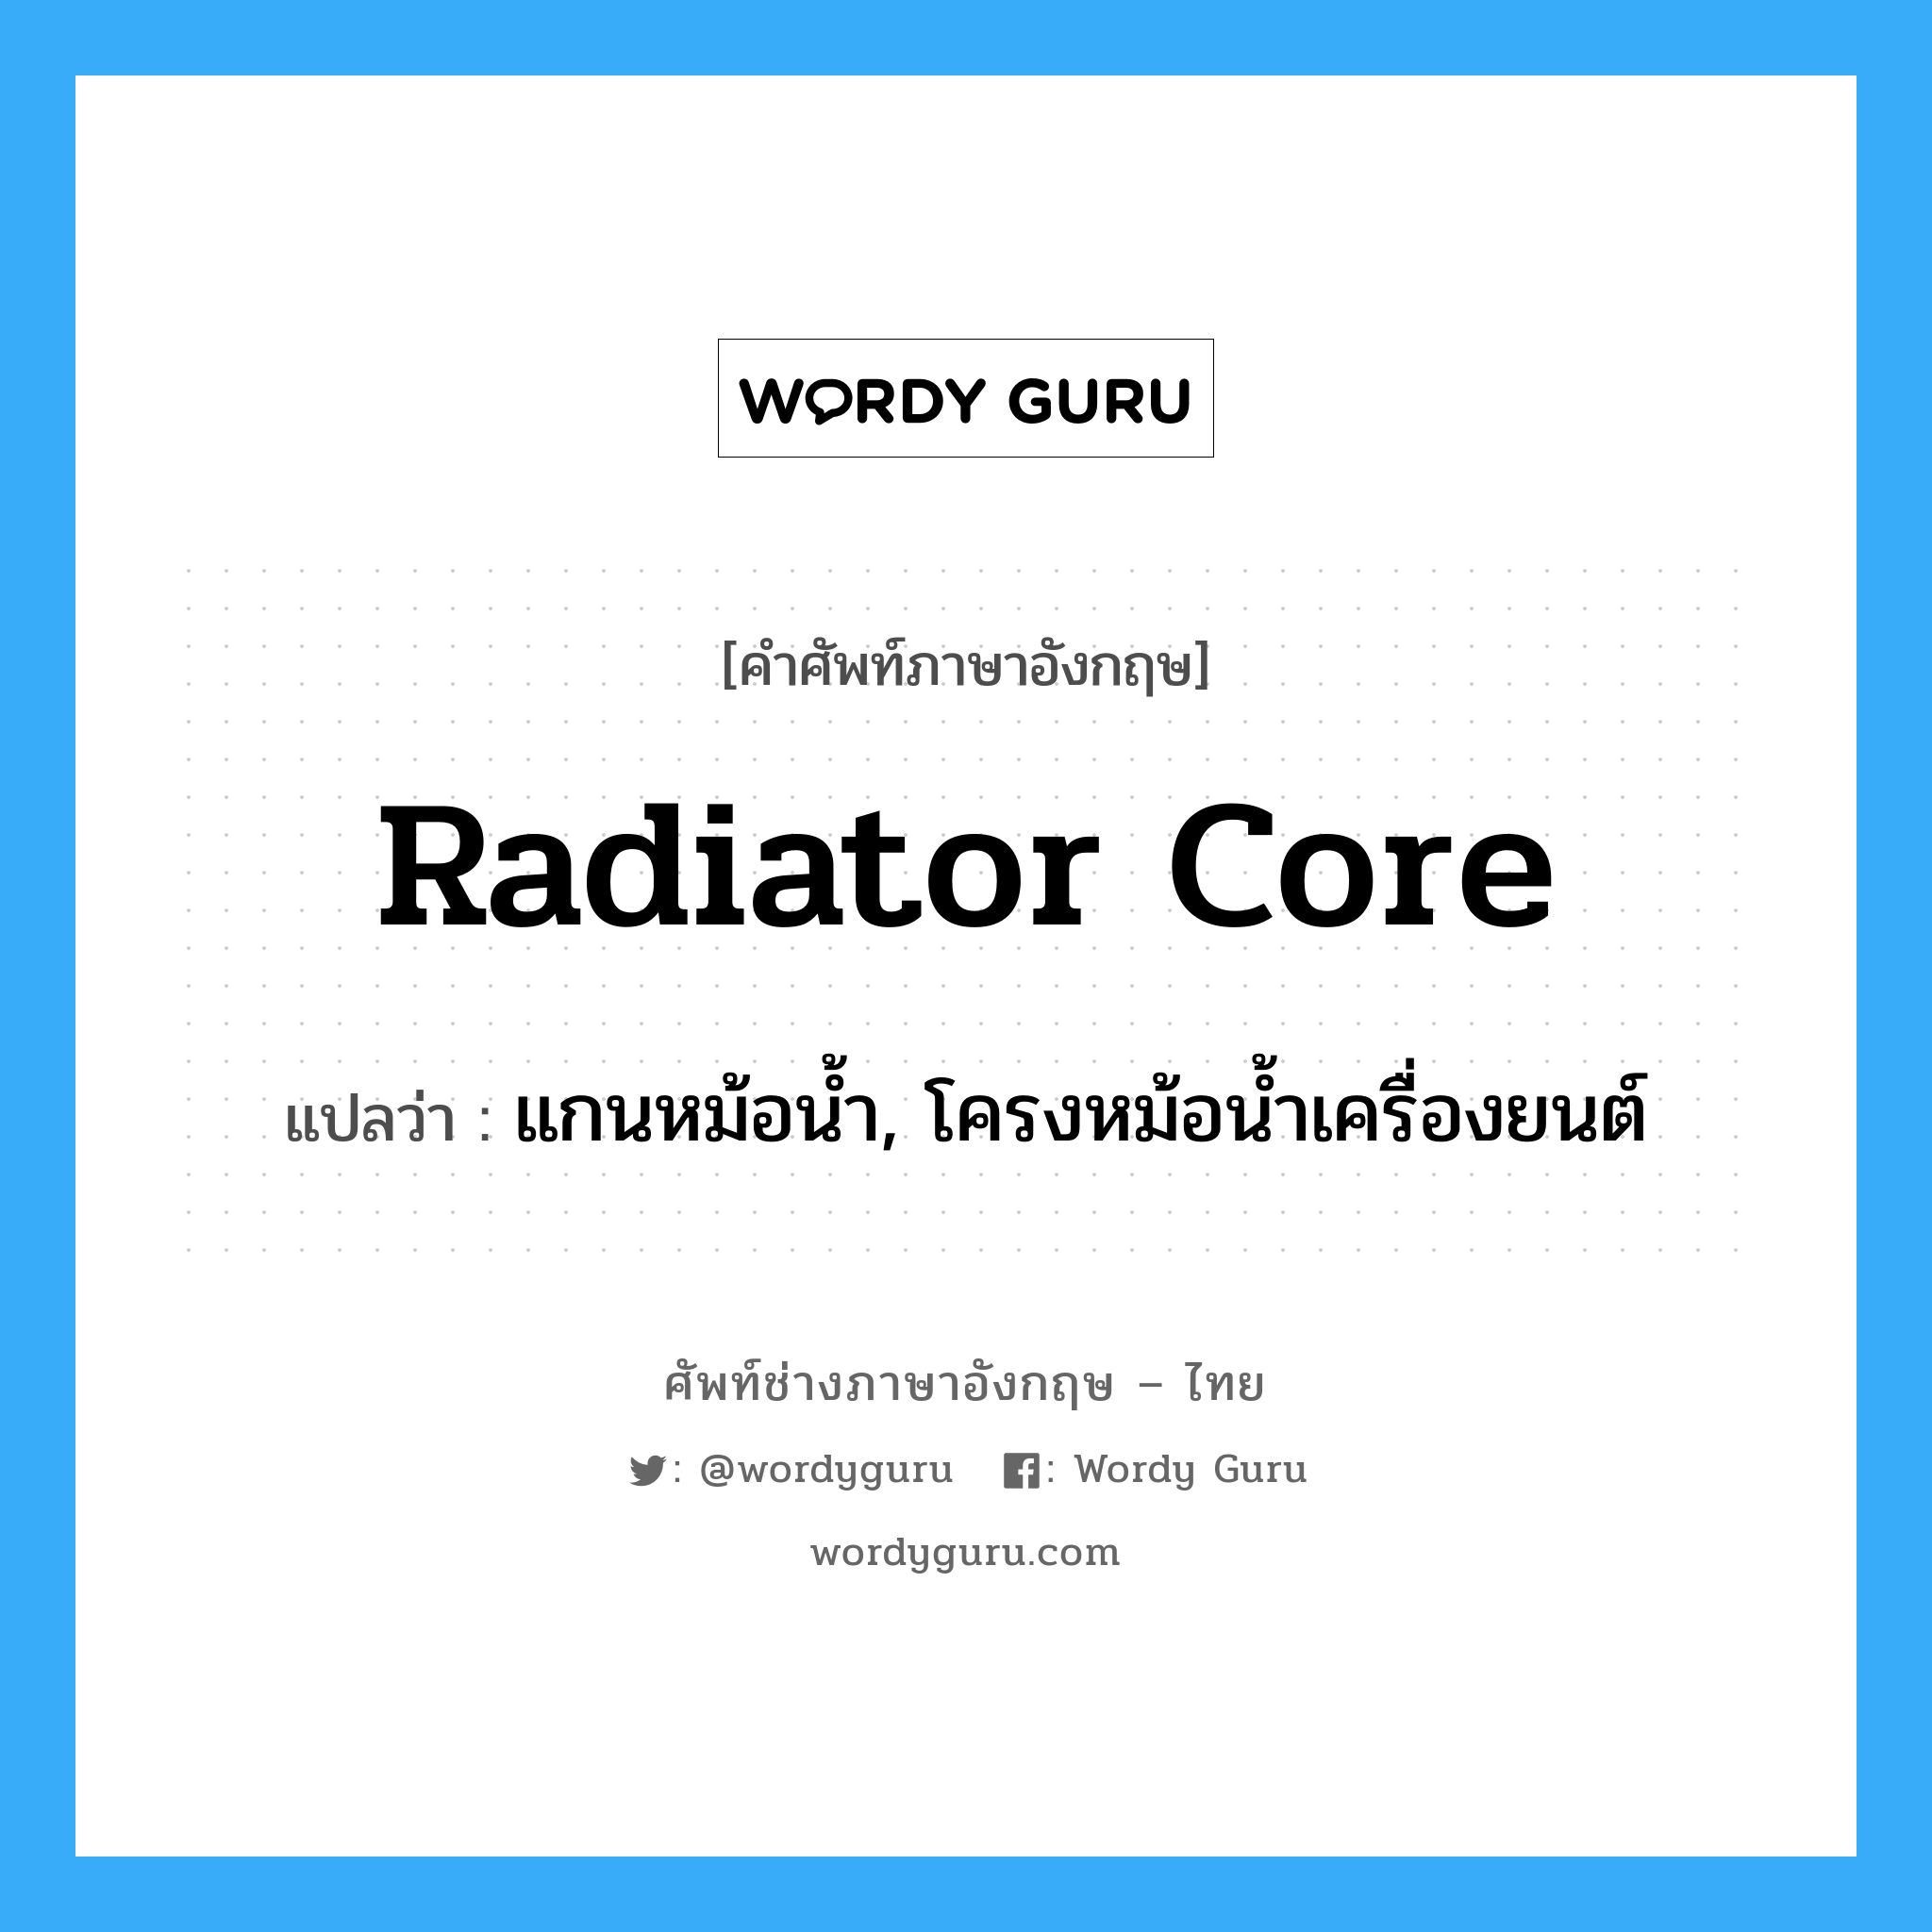 radiator core แปลว่า?, คำศัพท์ช่างภาษาอังกฤษ - ไทย radiator core คำศัพท์ภาษาอังกฤษ radiator core แปลว่า แกนหม้อน้ำ, โครงหม้อน้ำเครื่องยนต์